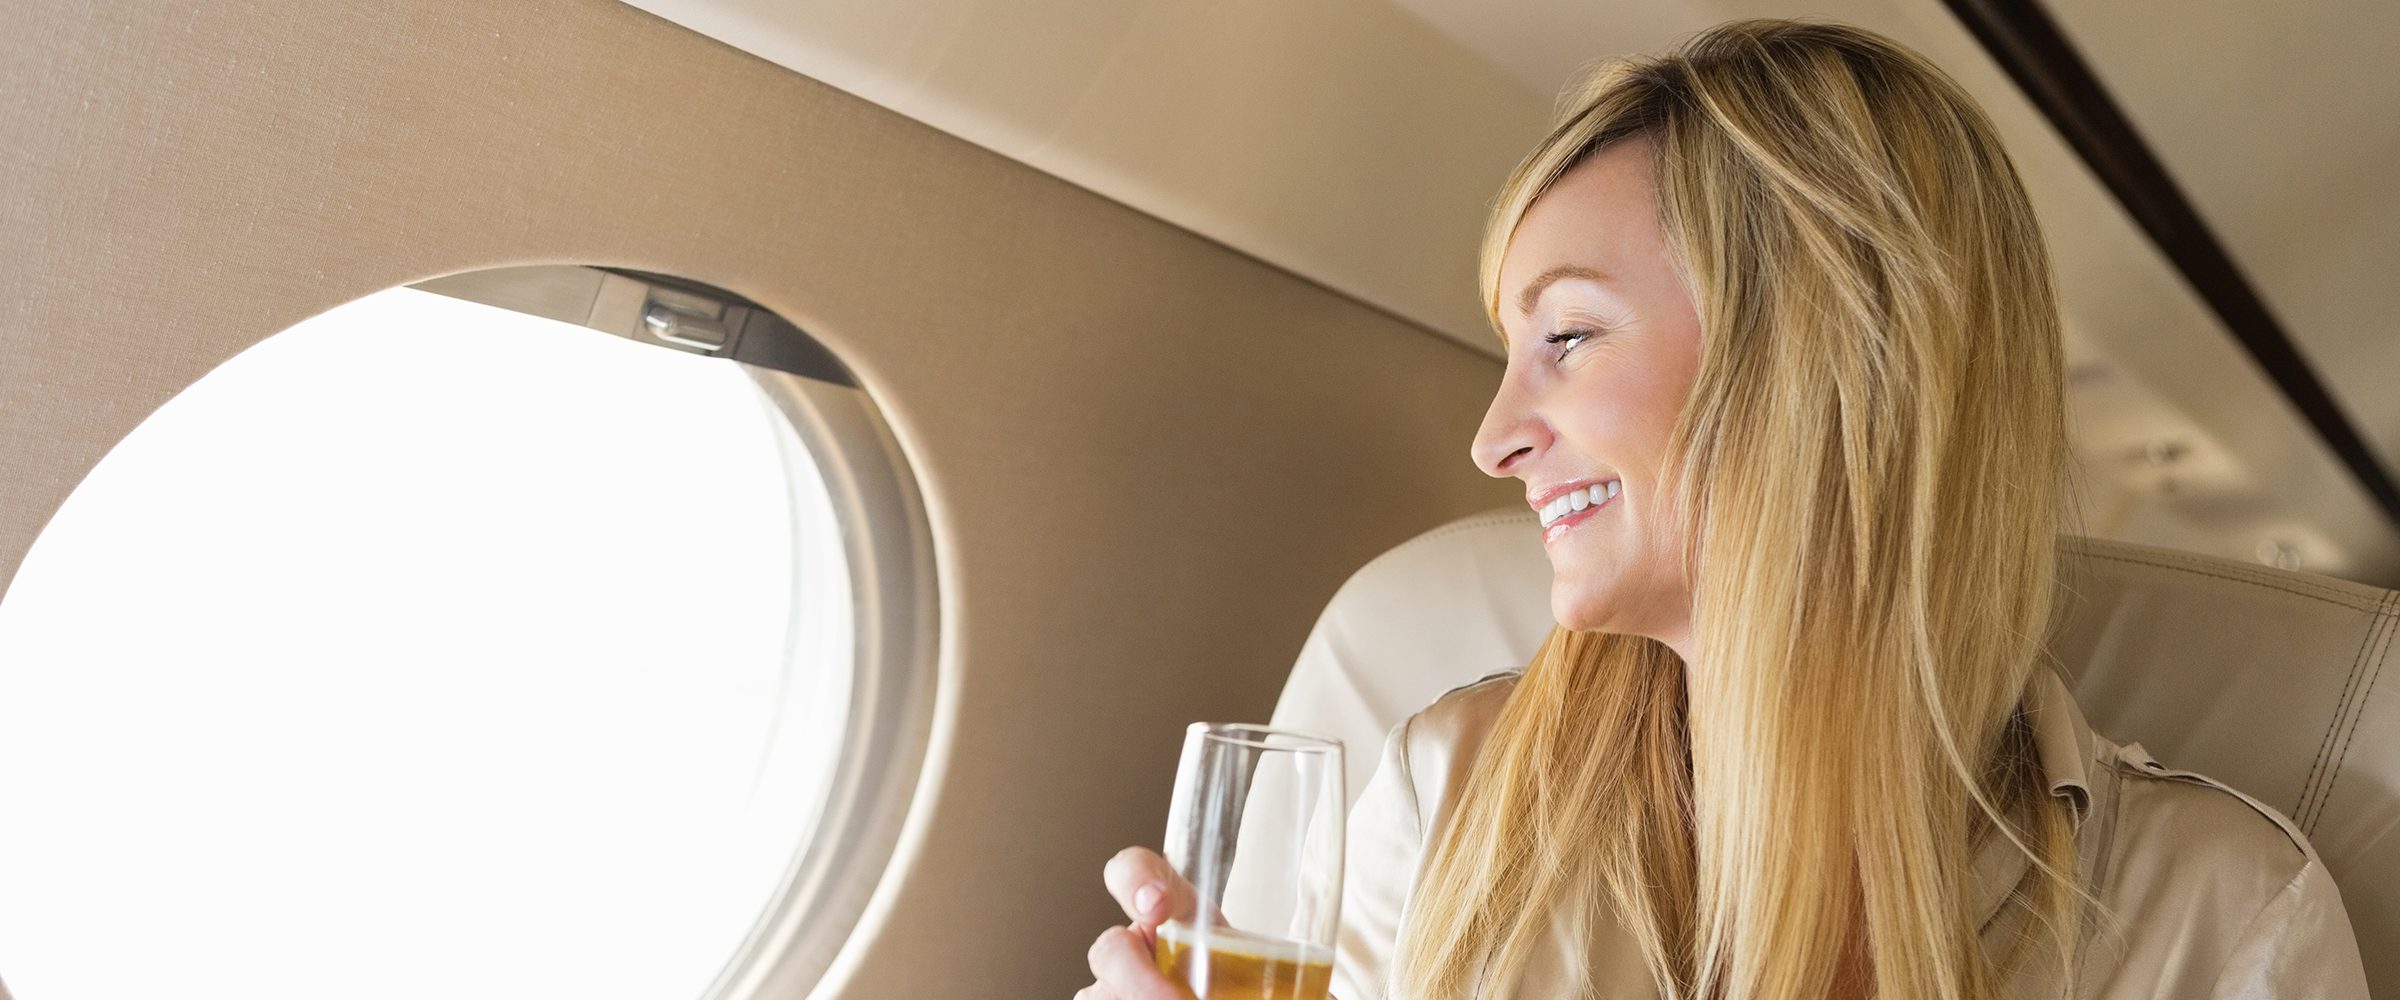 Шампанское в самолете можно. Девушка с шампанским в самолете. Красотка в частном самолете с шампанским. Шампанское в частном самолете. Девушка в салоне самолета с шампанским.